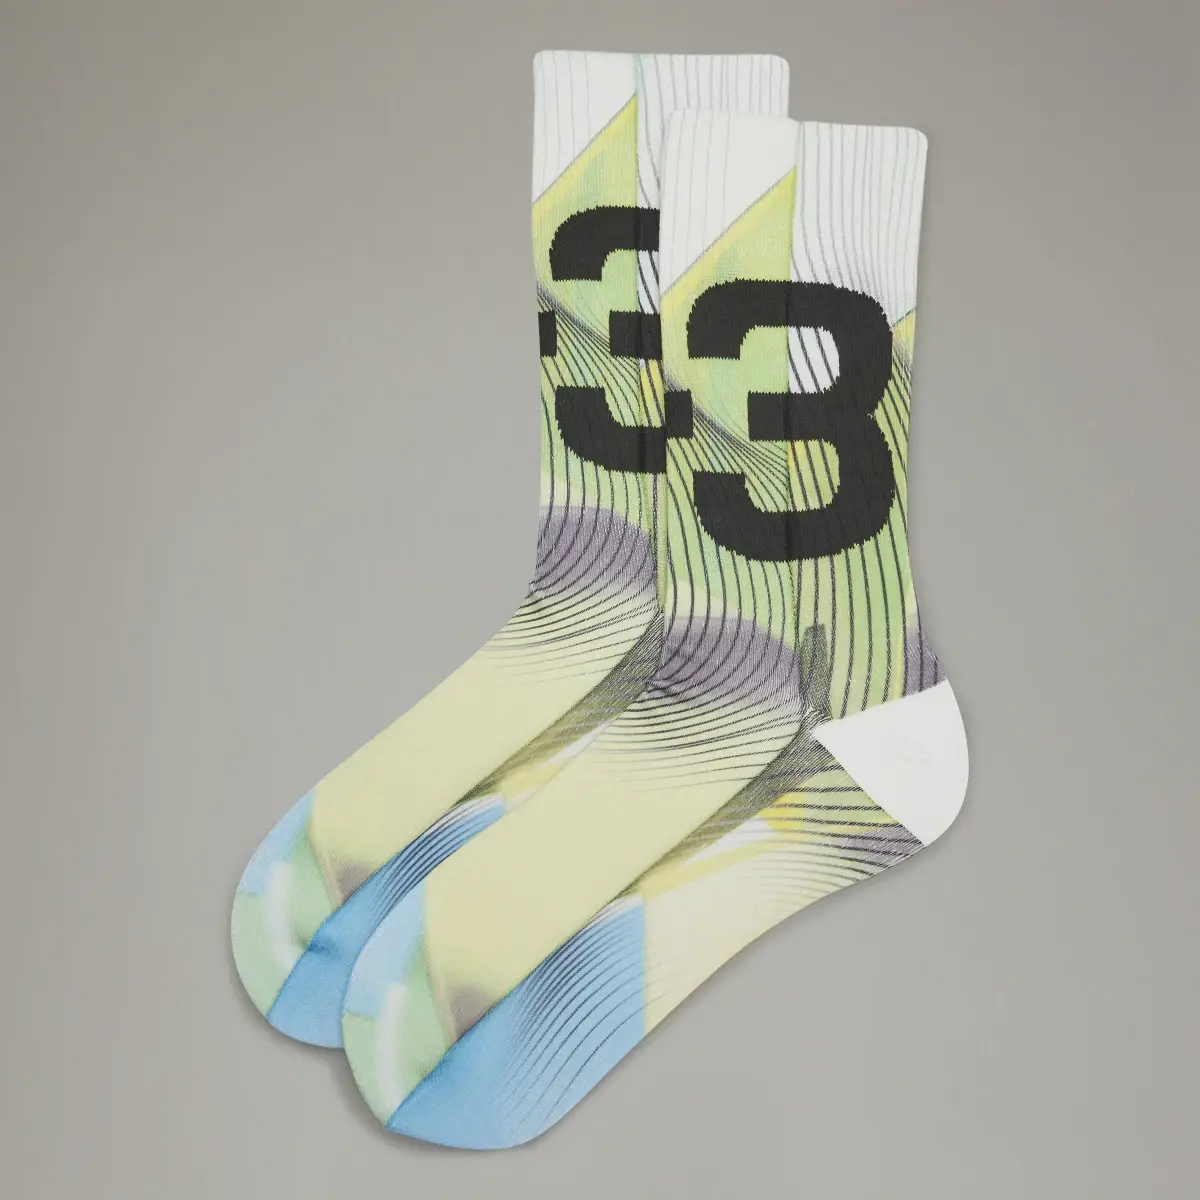 Adidas Y-3 Allover Print Socks. 2